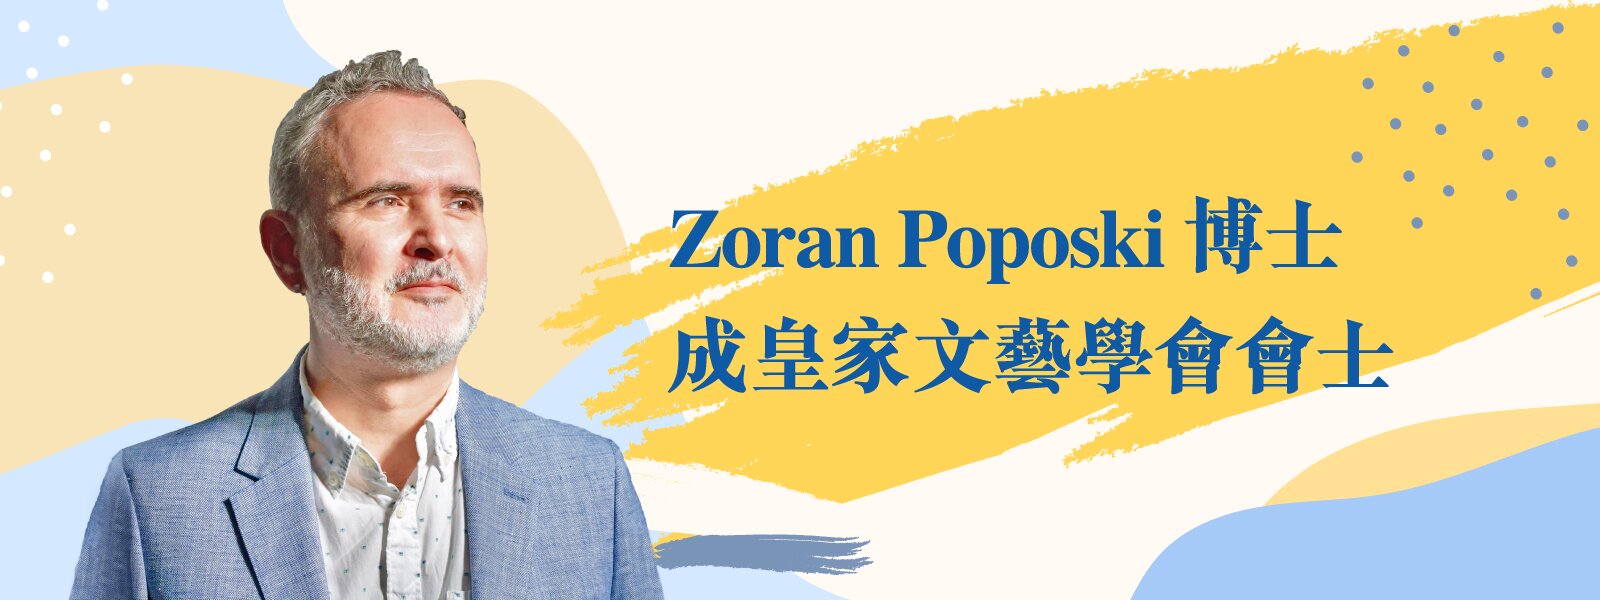 Zoran Poposki博士成皇家文藝學會會士